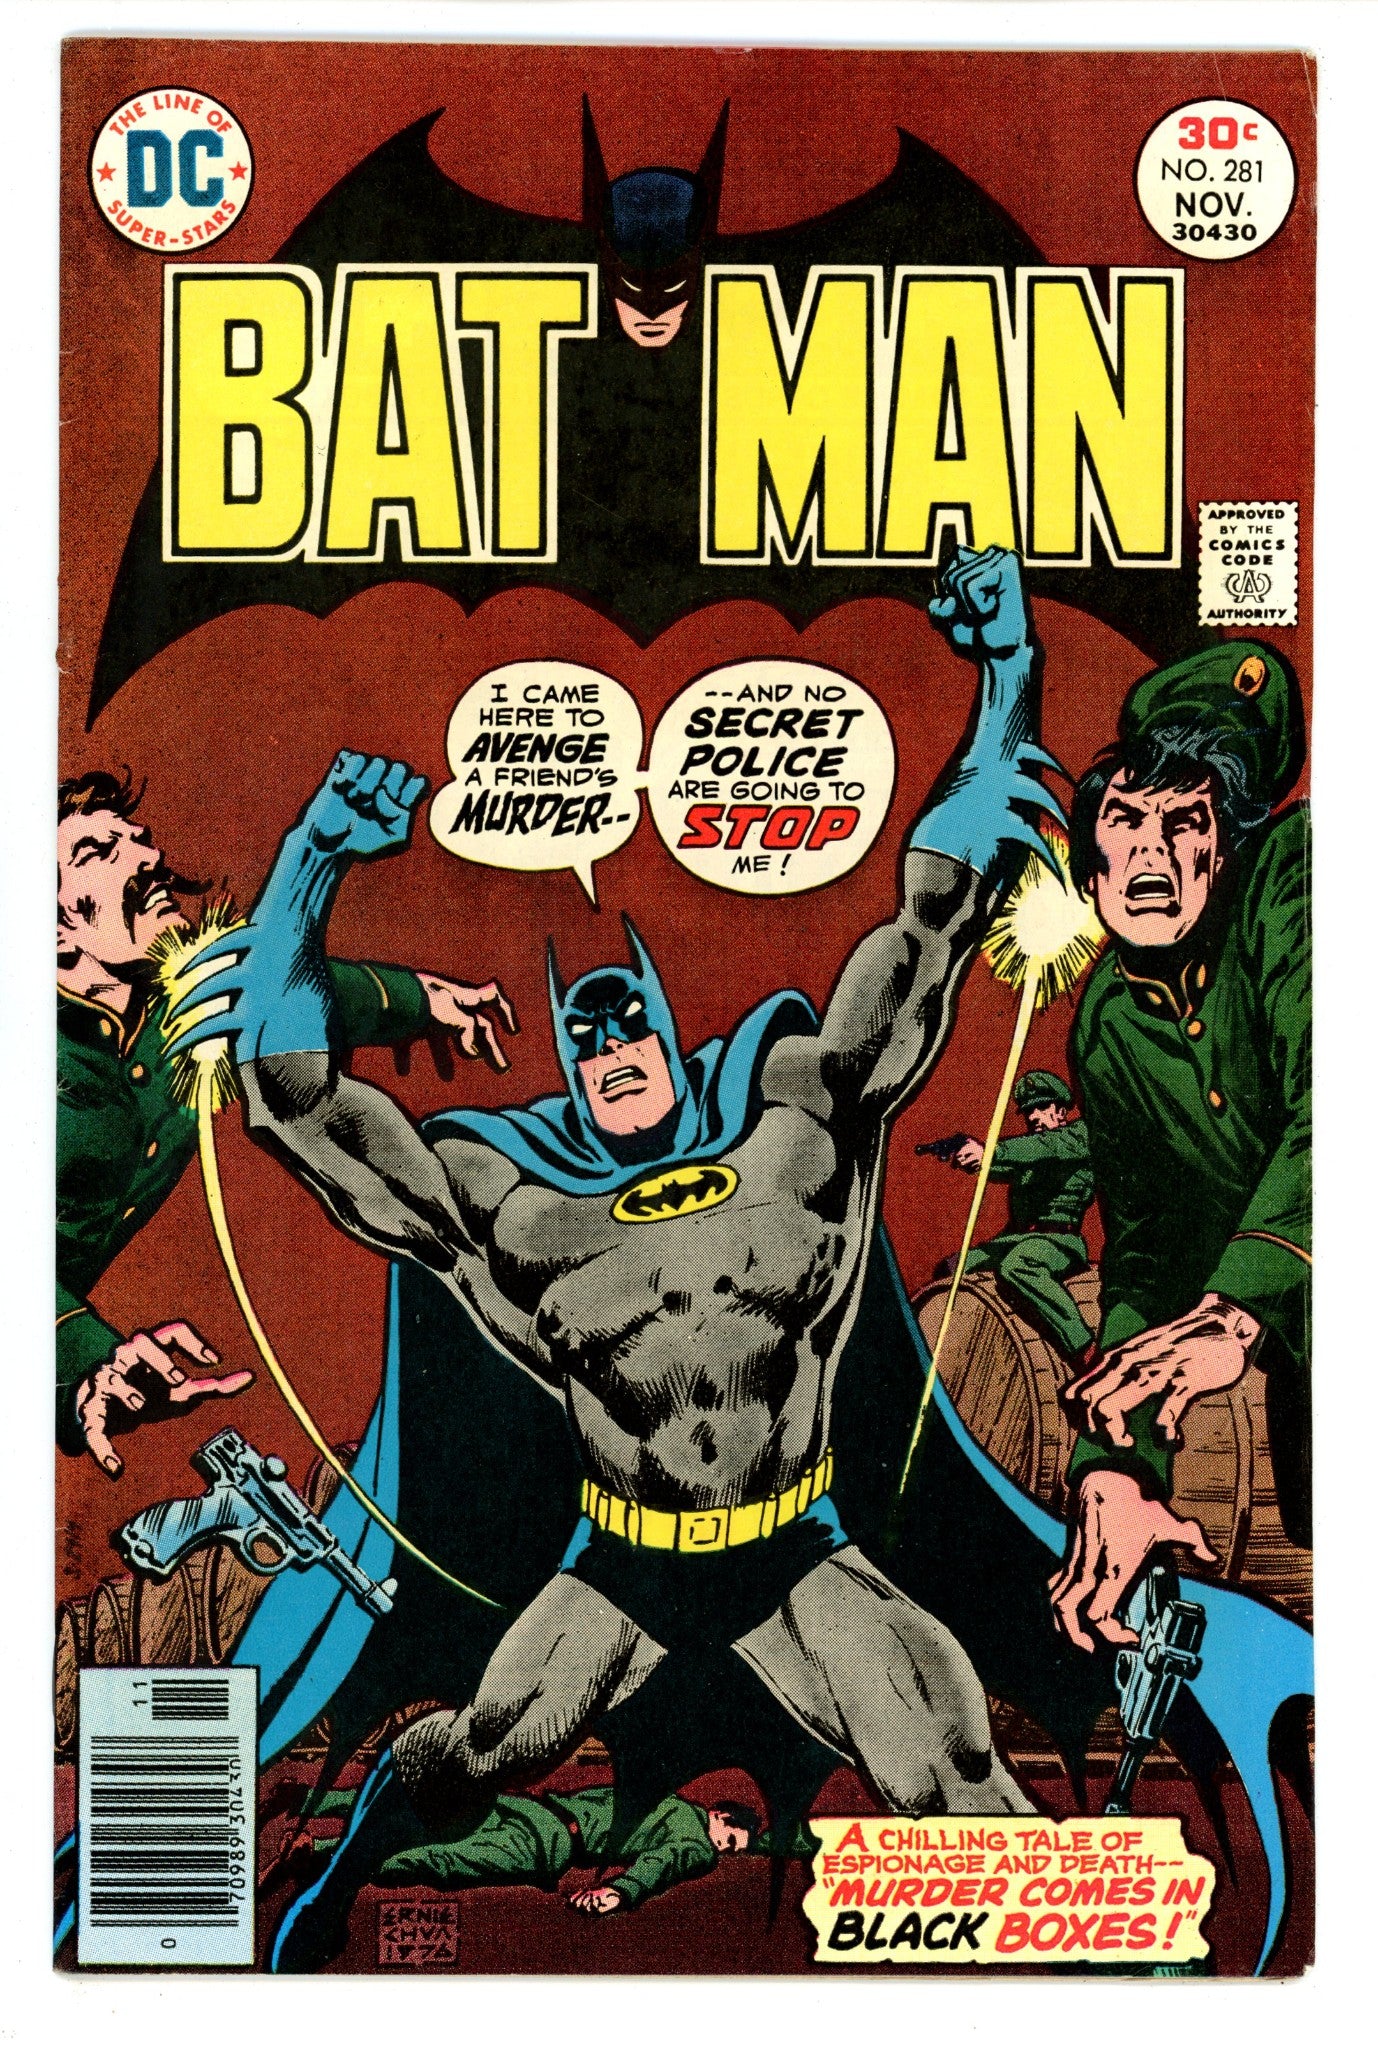 Batman Vol 1 281 FN+ (6.5) (1976) 